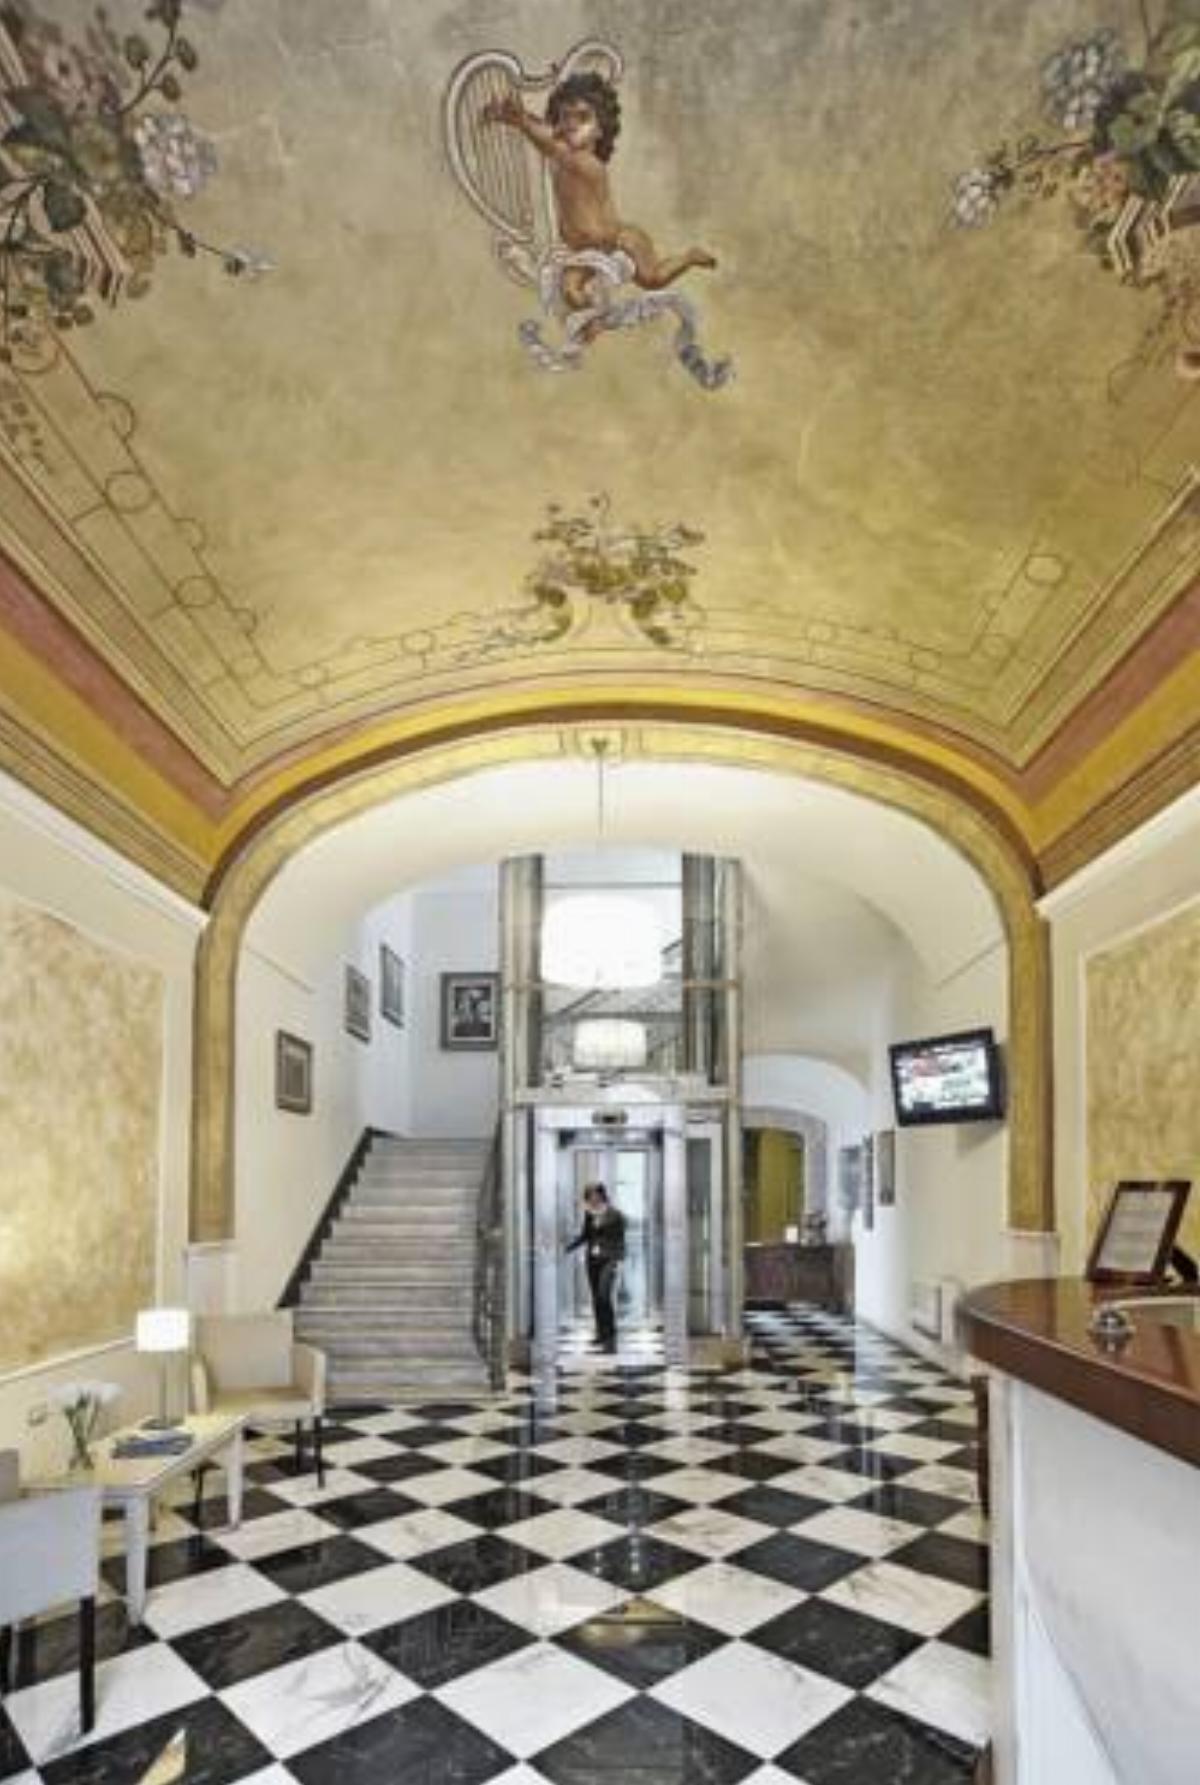 Palazzo Sa Pischedda Hotel Bosa Italy